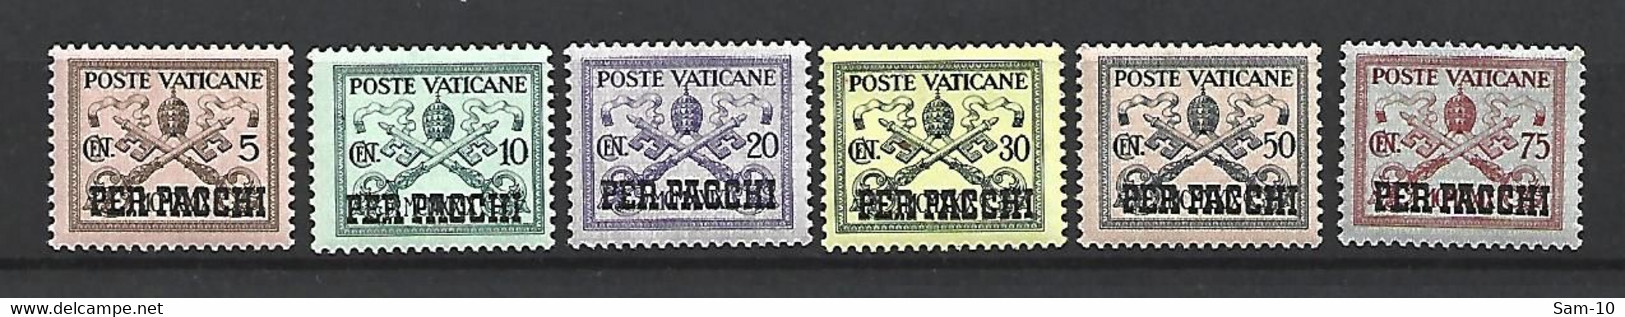 Timbre Du Vatican Colis Postaux Neuf **  N 1 / 2 / 3 / 5 / 6 / 7 - Paketmarken